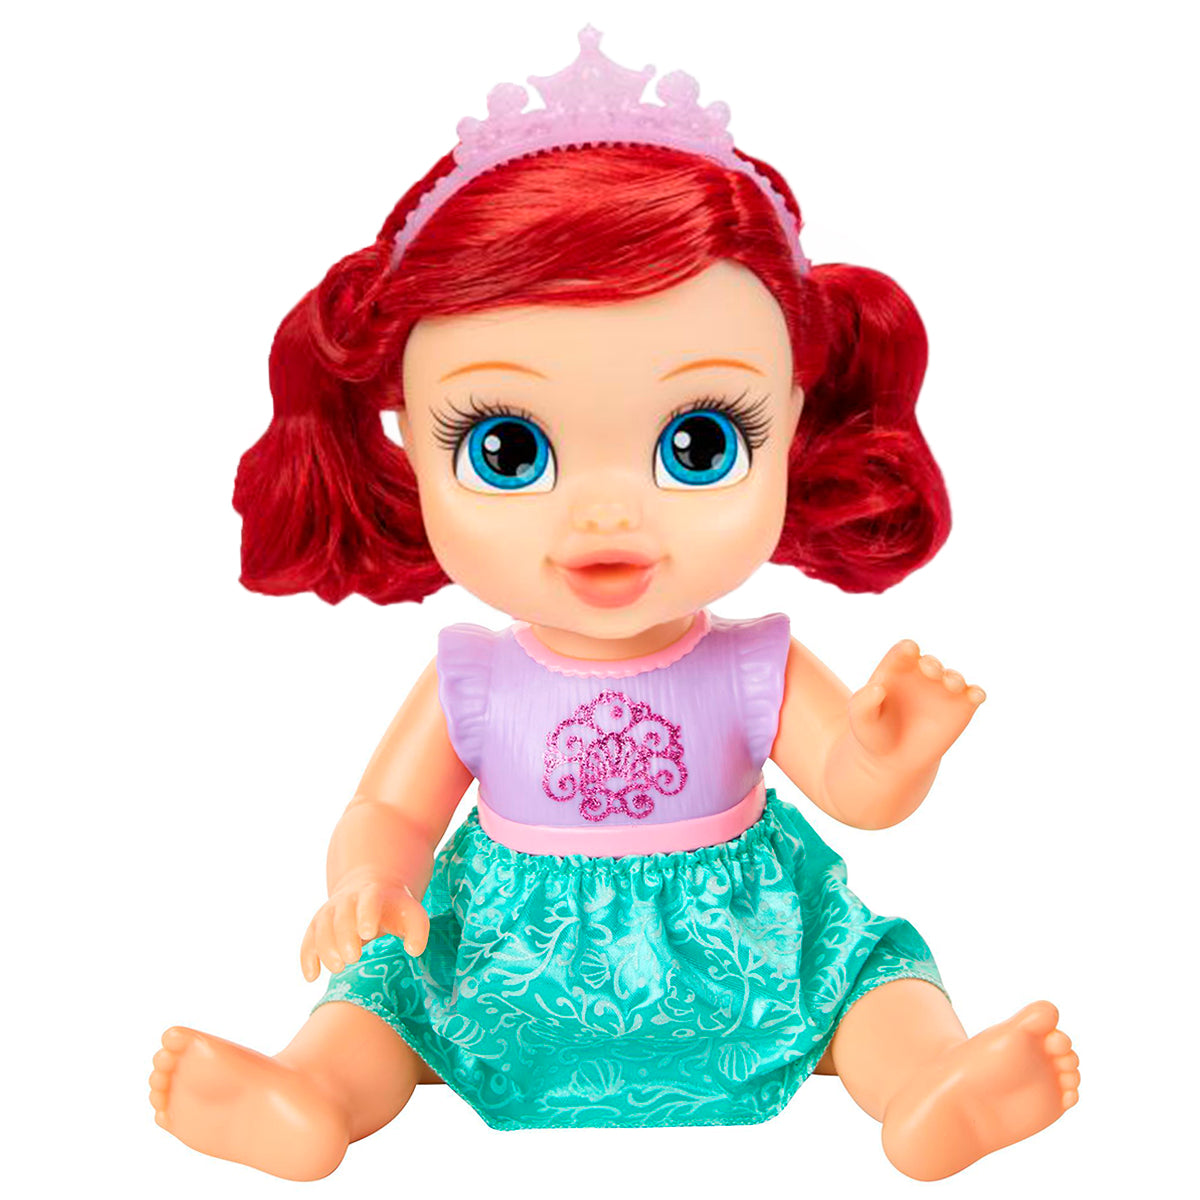 Muñeca Disney Princesas Bebé Ariel Jakks